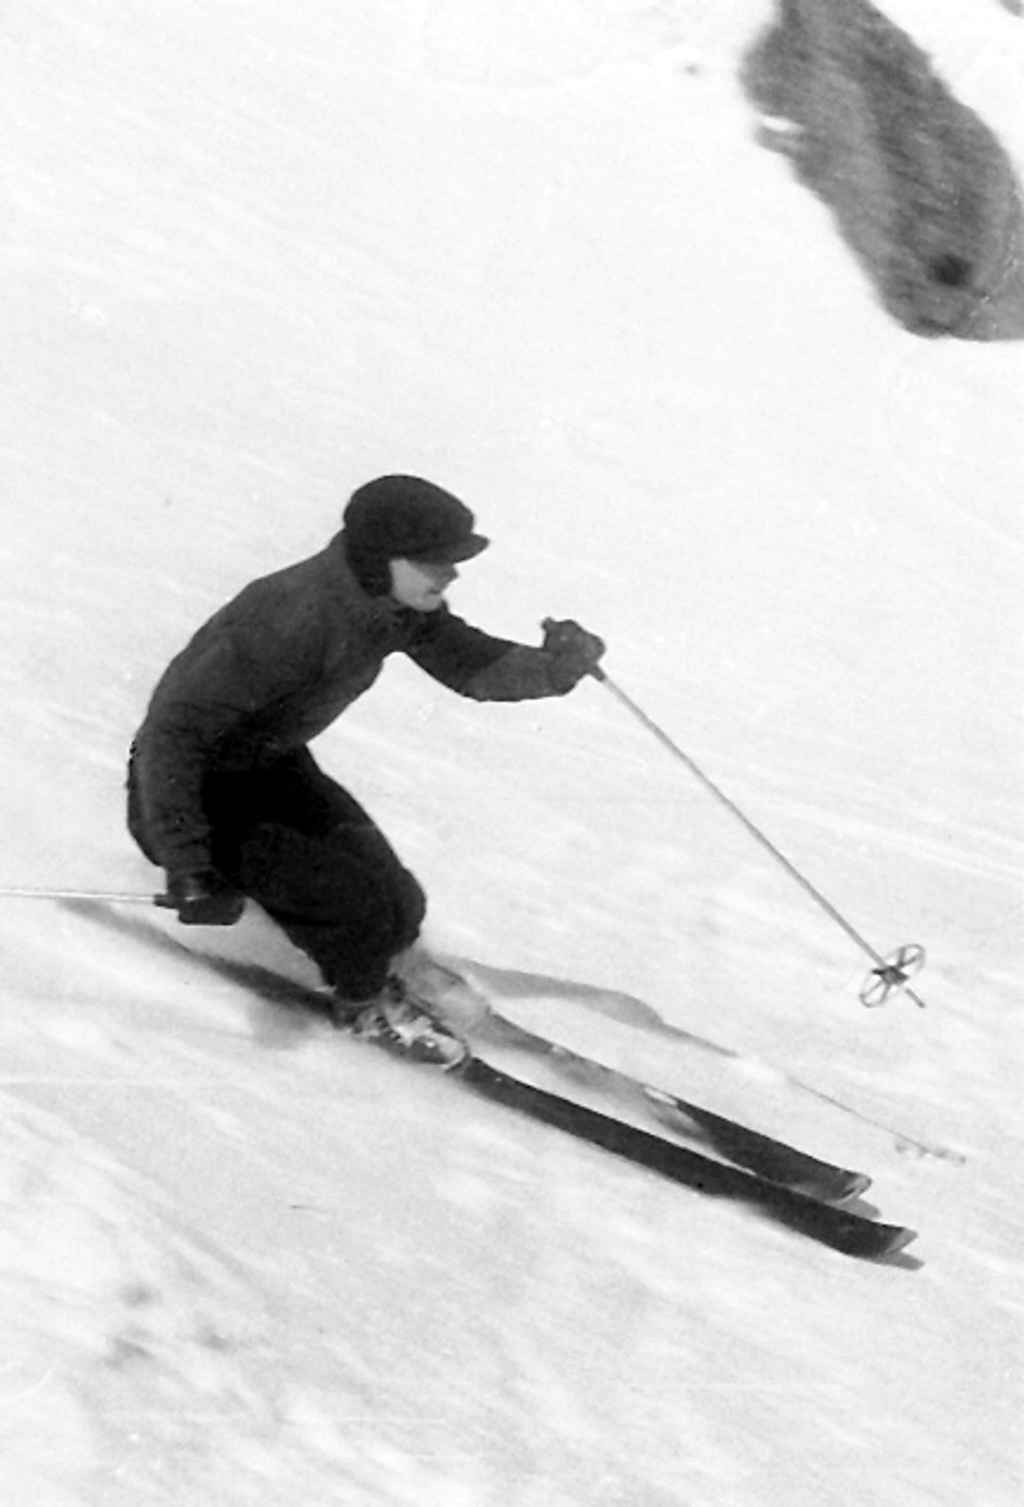 skieur en plein descente